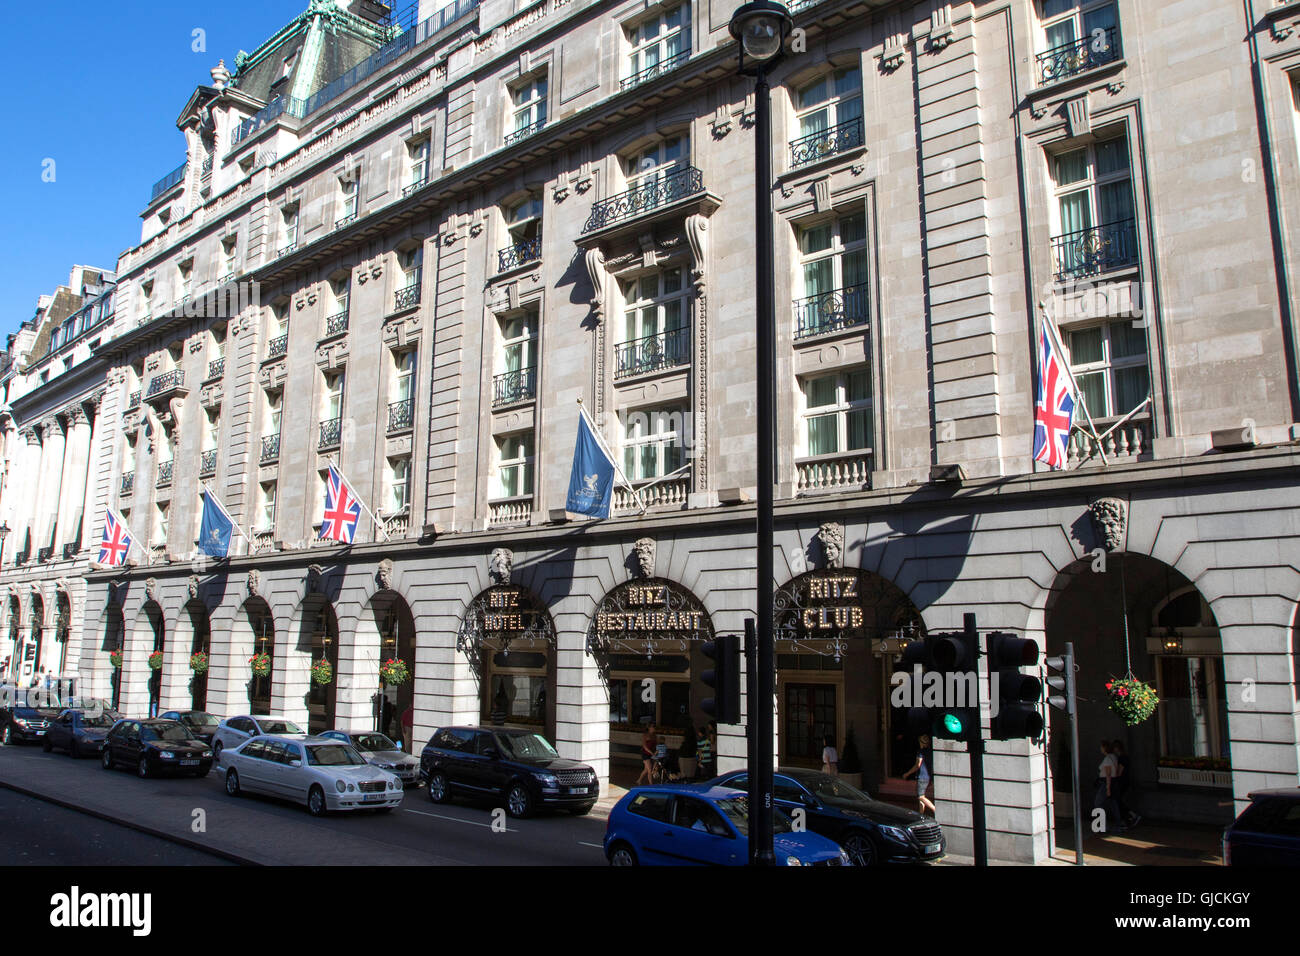 El grado II, se encuentra el Hotel Ritz Hotel hotel de 5 estrellas situado en Piccadilly en Londres mostrando el exterior del restaurante Foto de stock